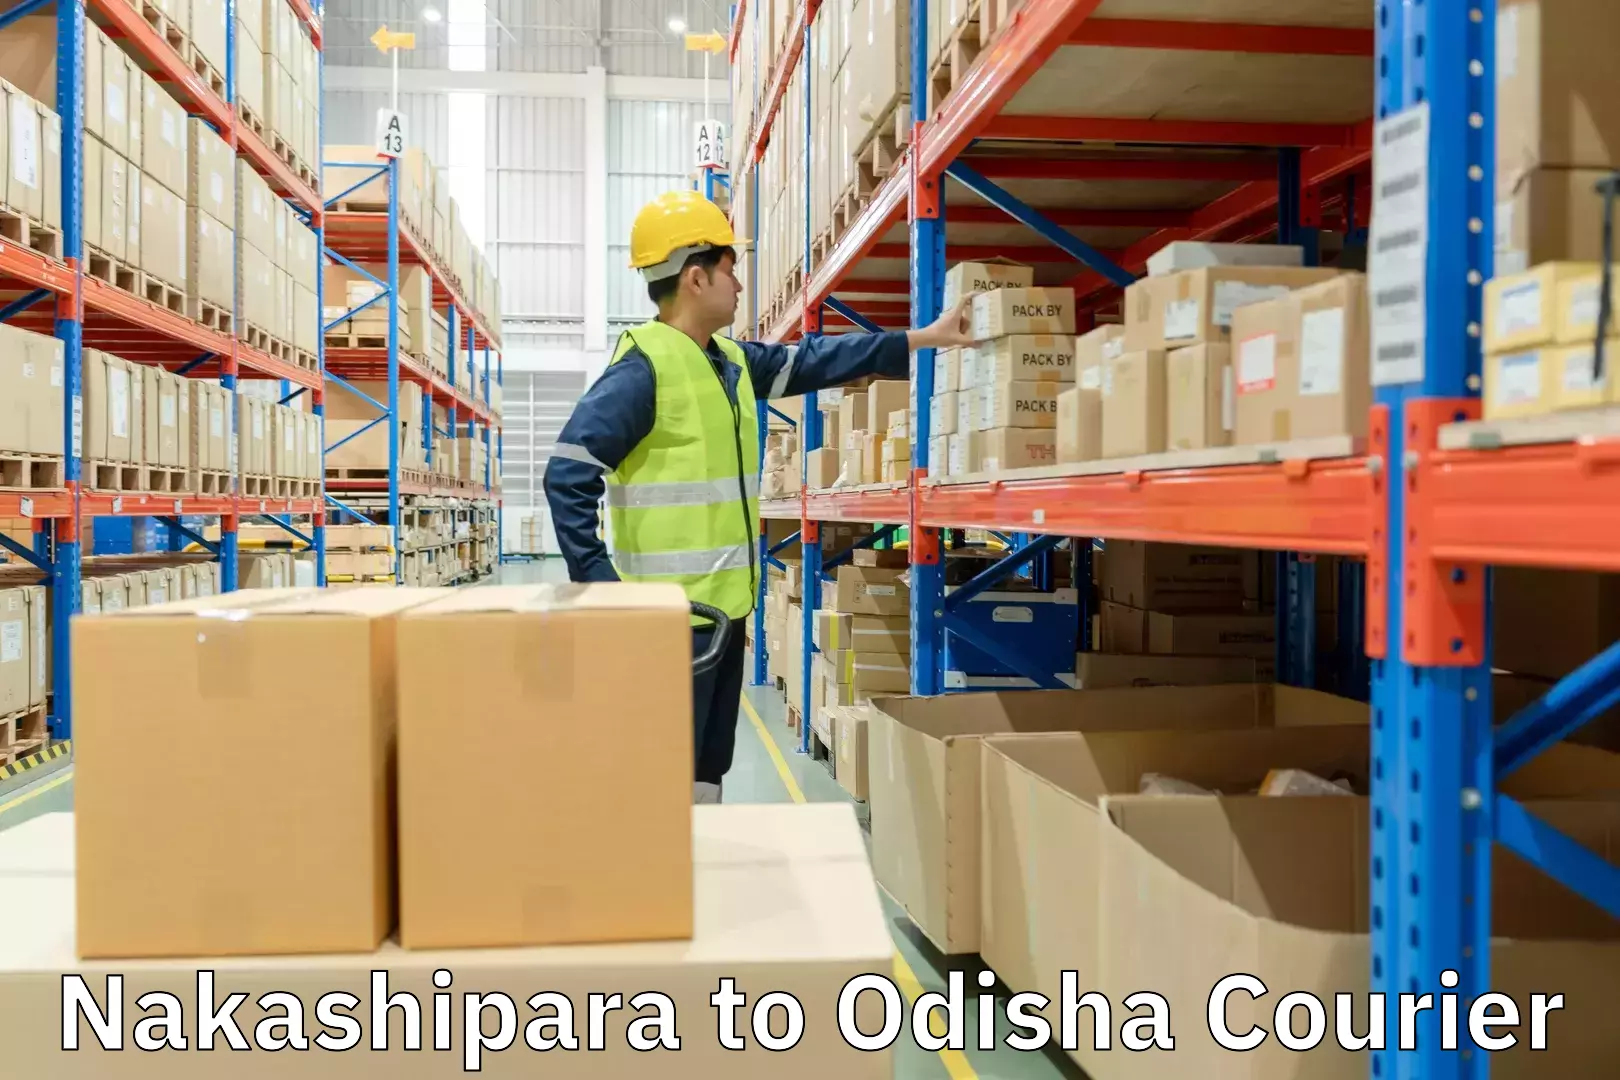 Optimized shipping routes Nakashipara to Baisinga